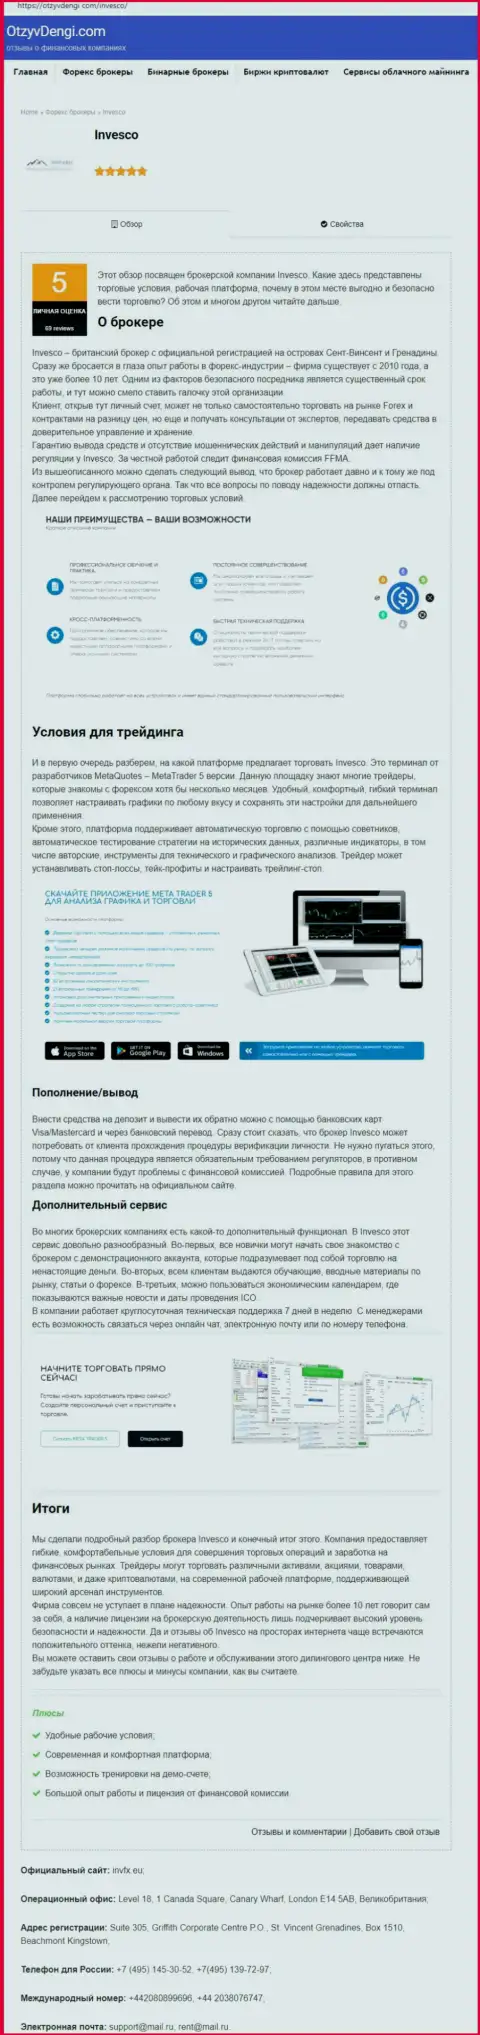 Сайт otzyvdengi com опубликовал материал о Форекс дилере ИНВФХ